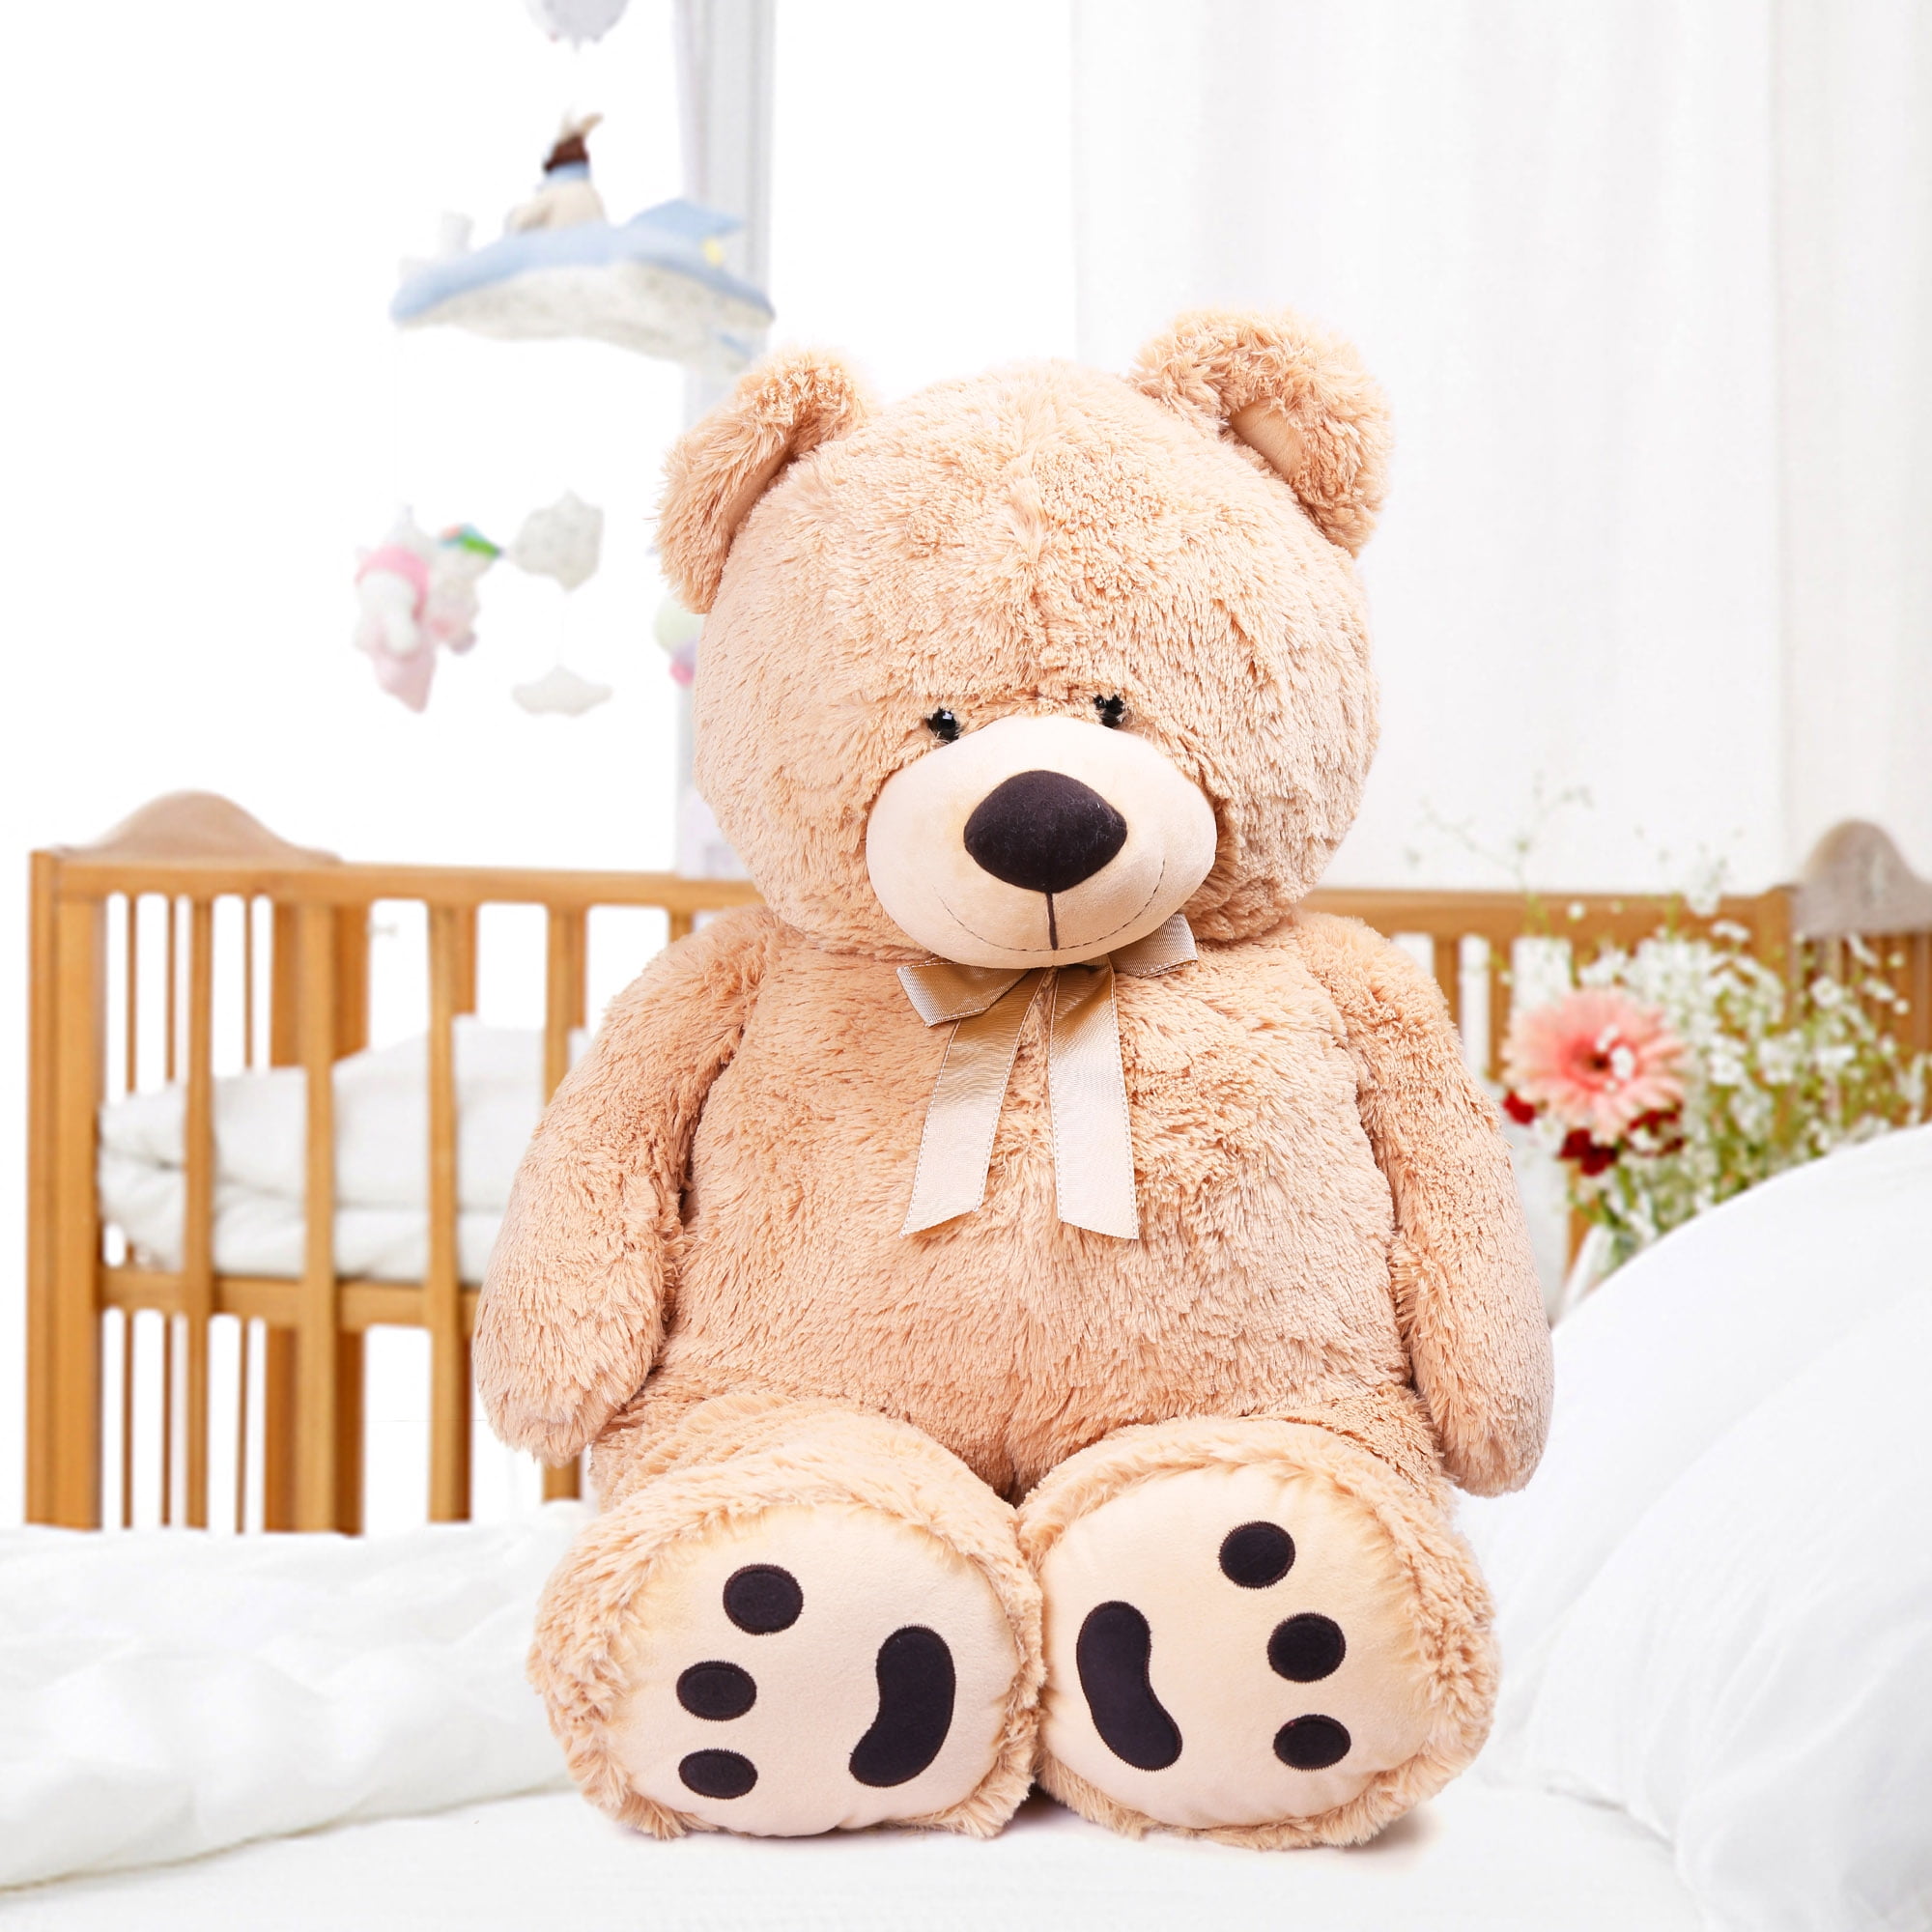 3 foot teddy bear walmart